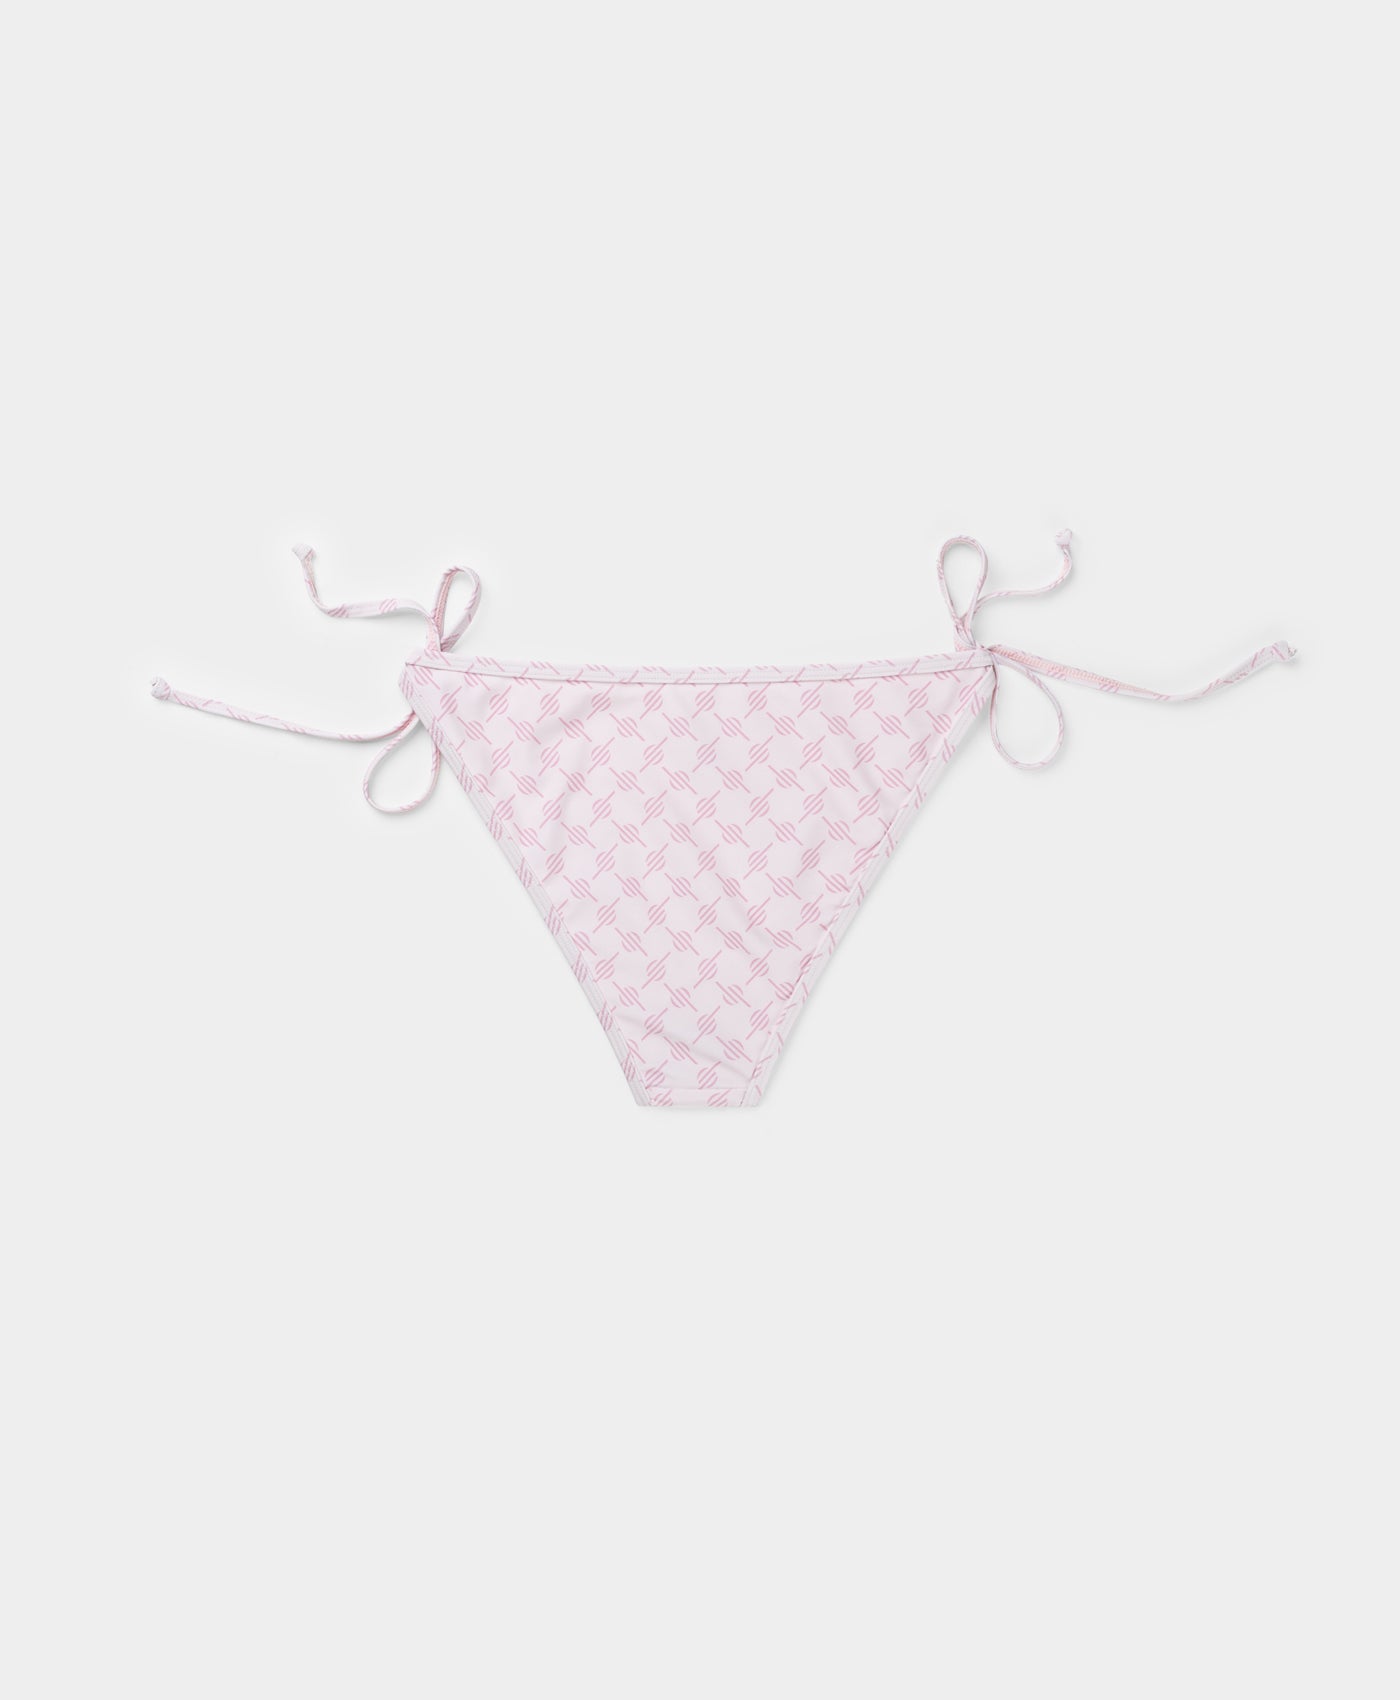 DP - Ice Pink Reya Monogram Bikini Bottom - Packshot - Rear